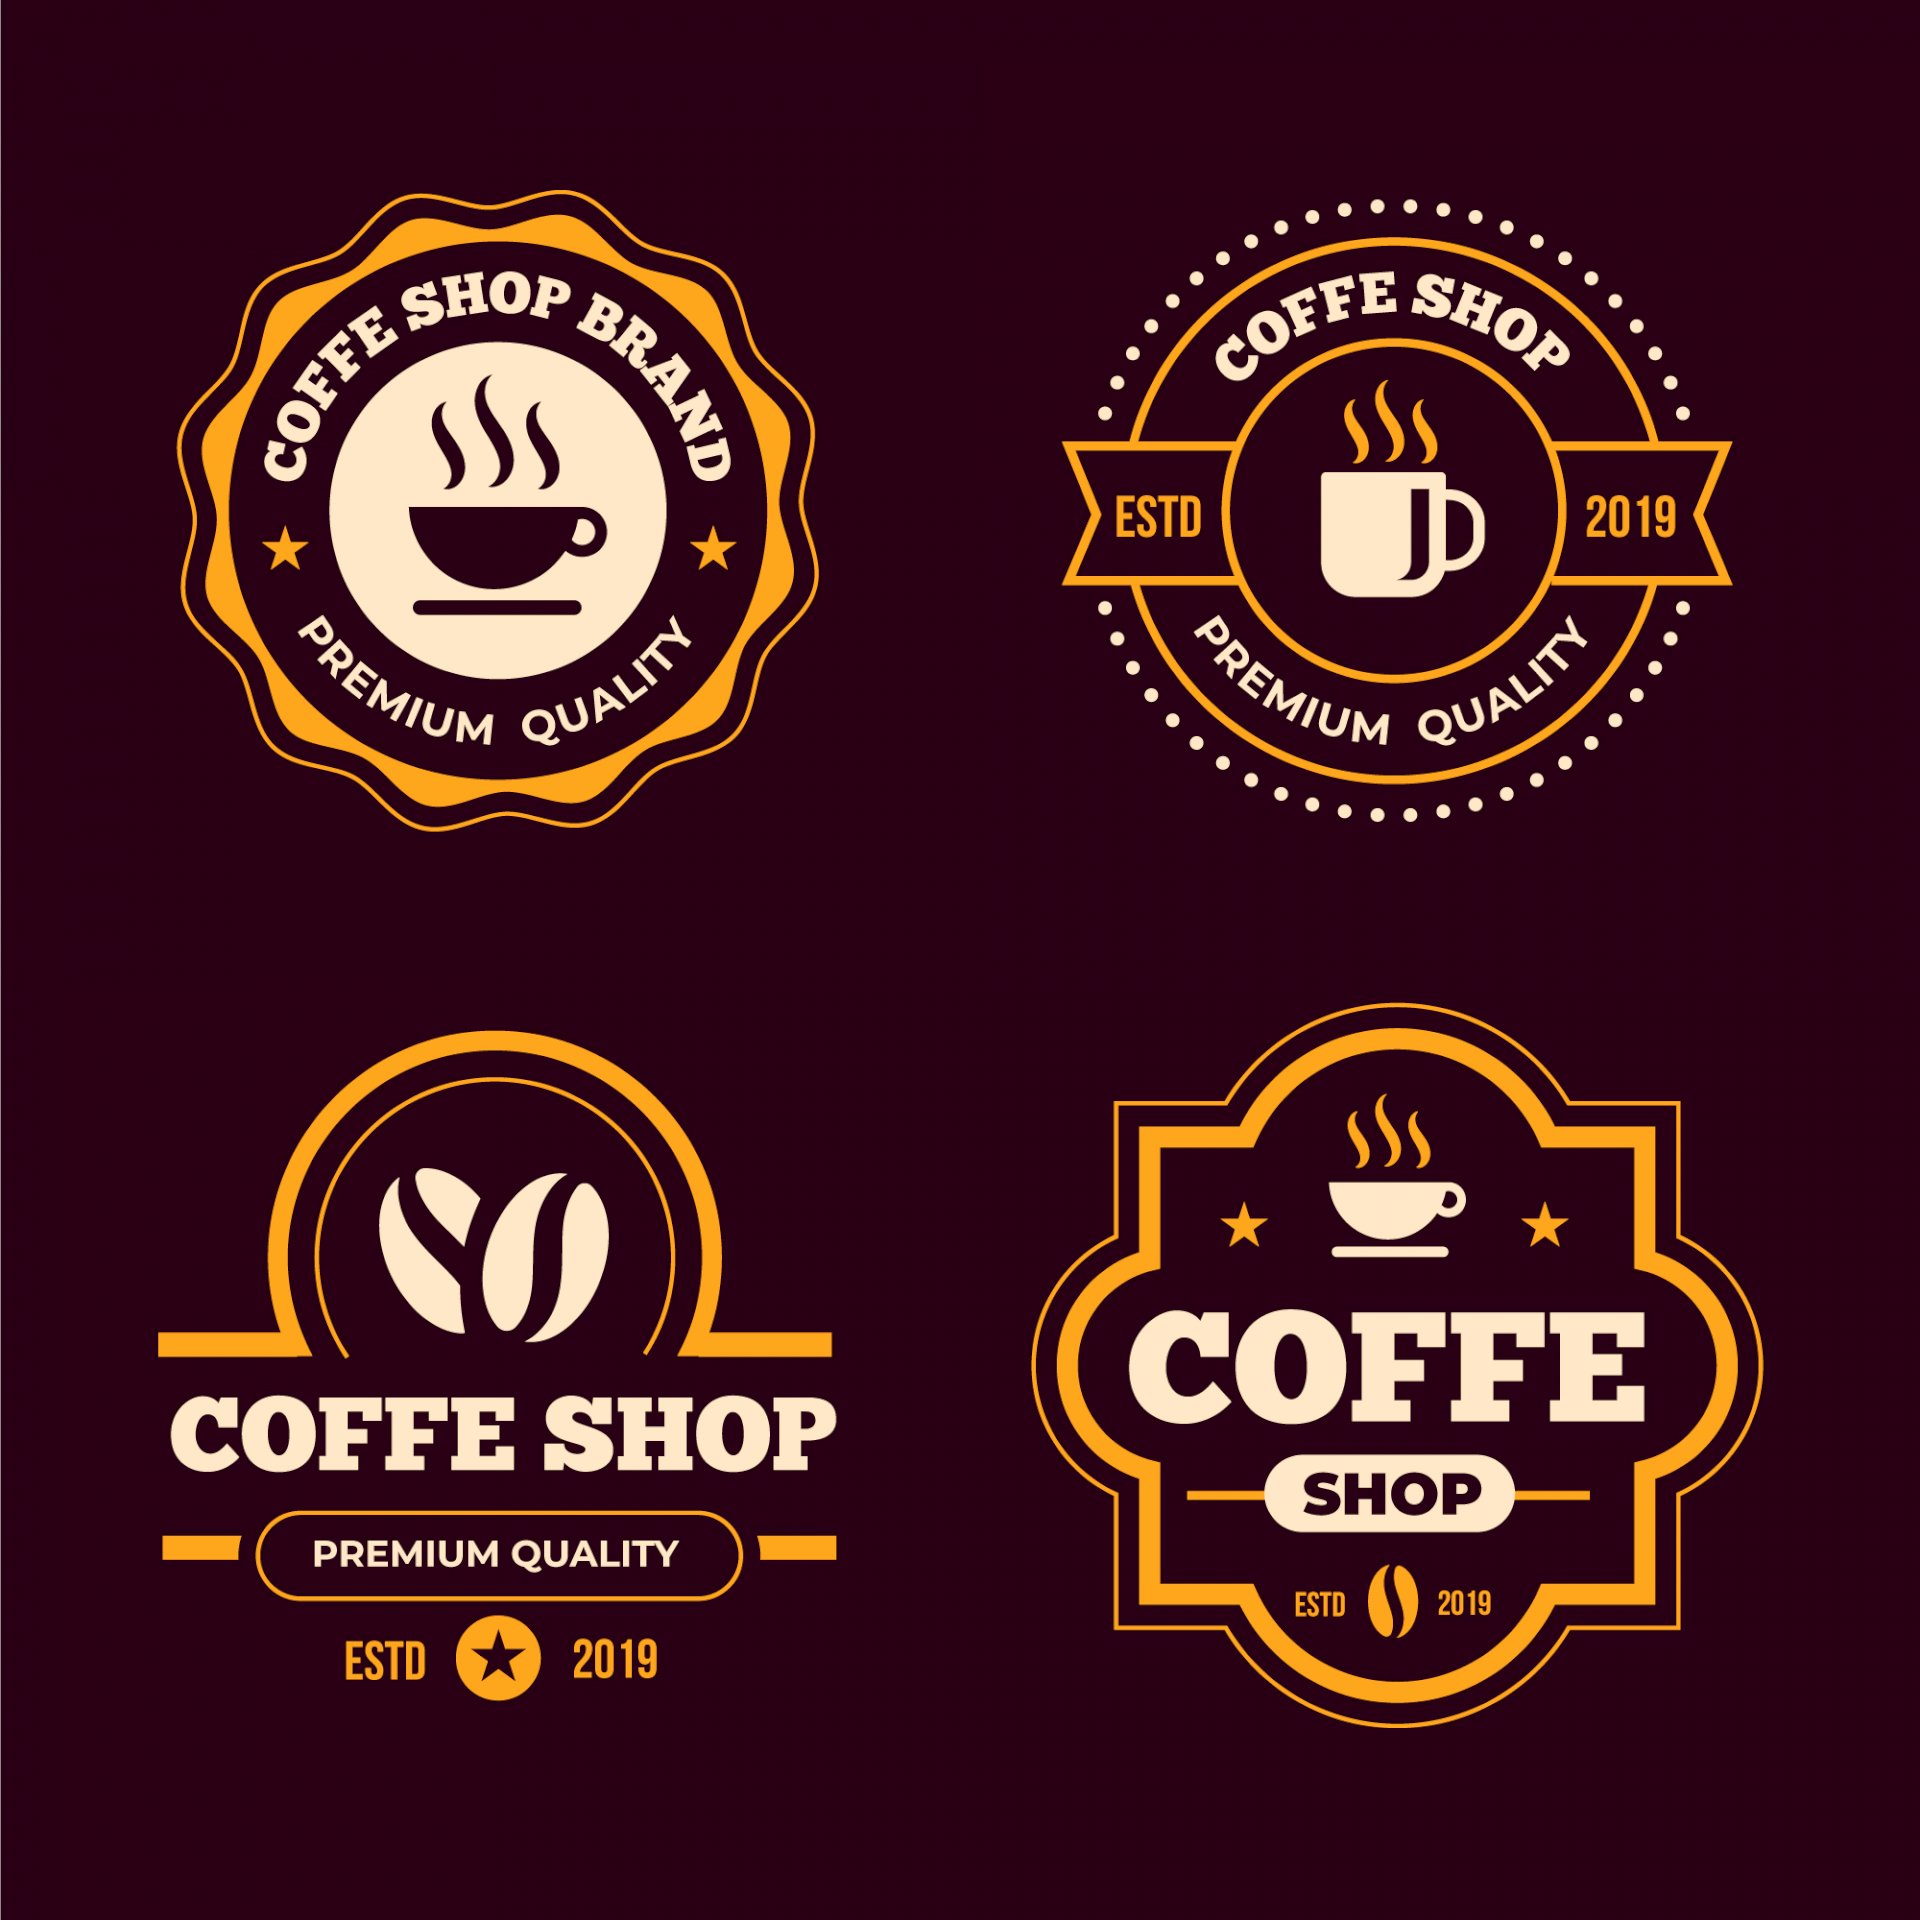 Bộ sưu tập cafe logo vector miễn phí để thiết kế logo công ty